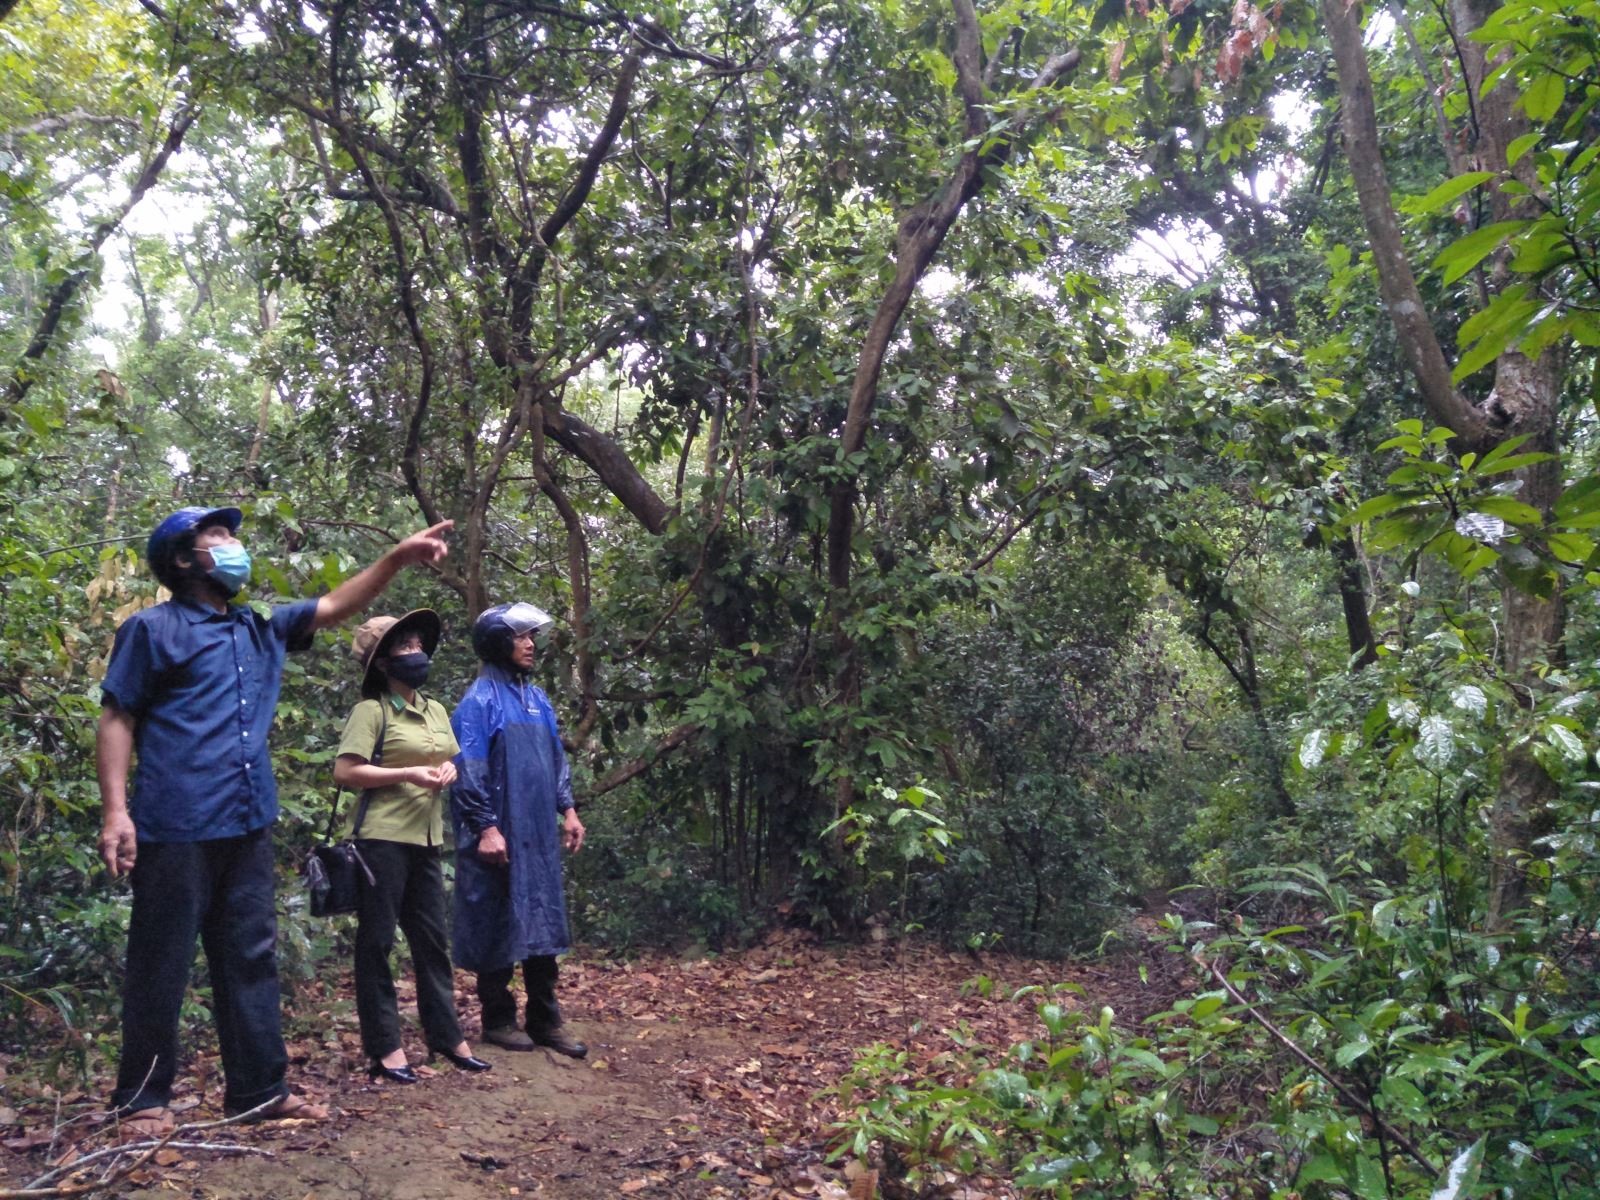 Ông Nguyễn Đình Trọng, thôn Hòa Bình, xã Hiền Thành, huyện Vĩnh Linh giới thiệu về một số cây quý trong rừng Rú Lịnh